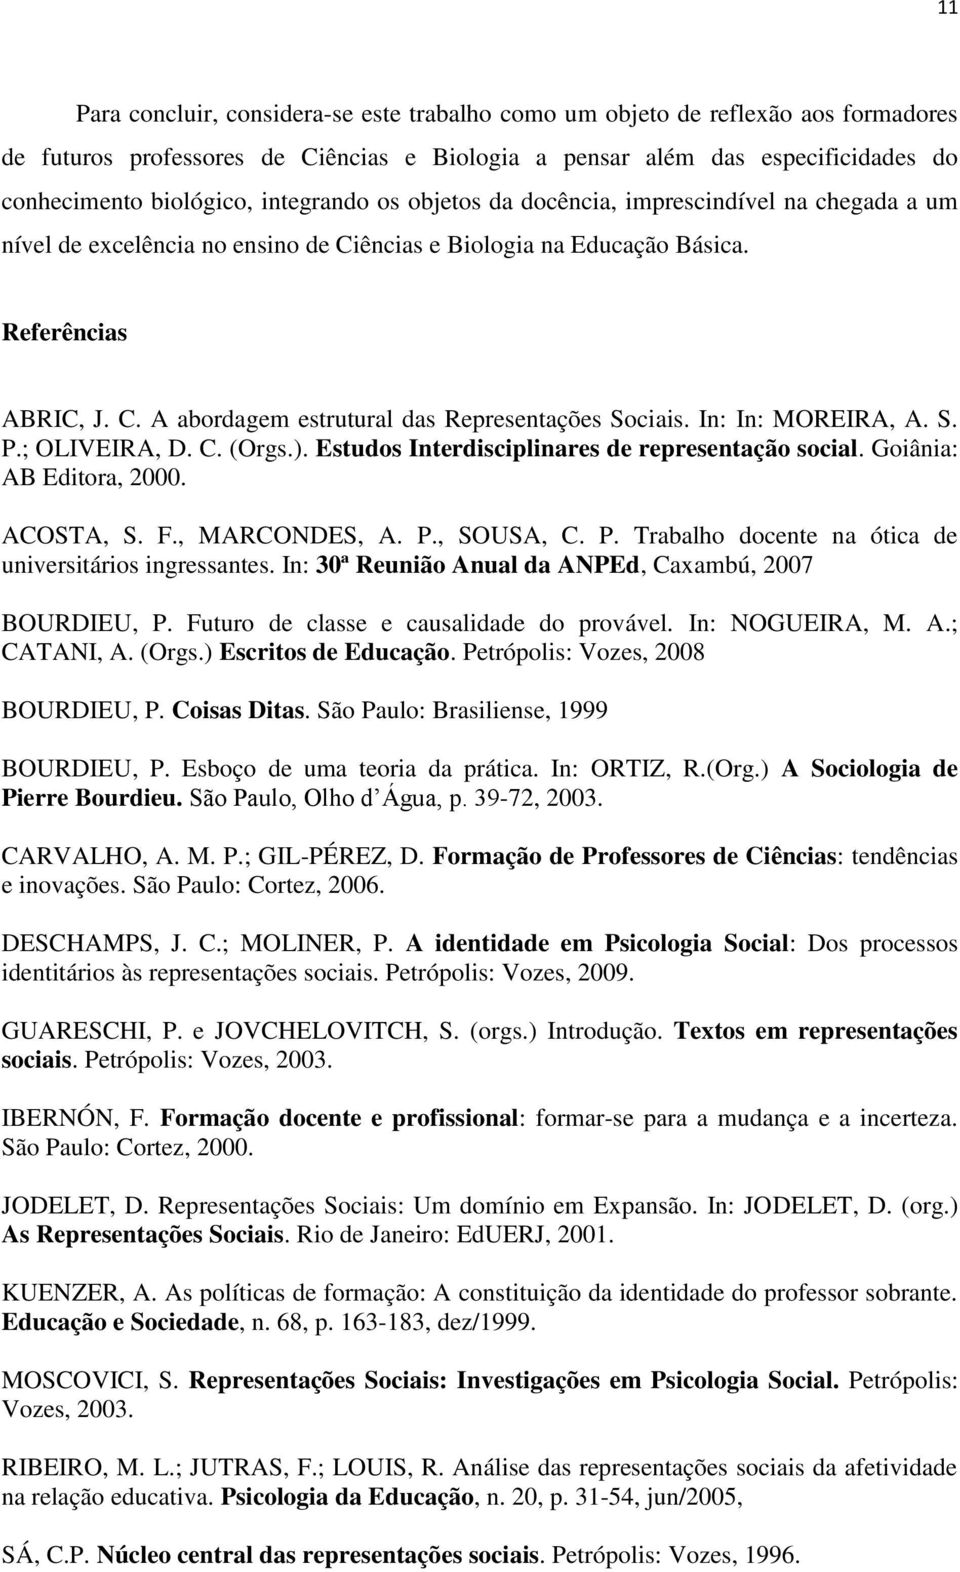 In: In: MOREIRA, A. S. P.; OLIVEIRA, D. C. (Orgs.). Estudos Interdisciplinares de representação social. Goiânia: AB Editora, 2000. ACOSTA, S. F., MARCONDES, A. P., SOUSA, C. P. Trabalho docente na ótica de universitários ingressantes.